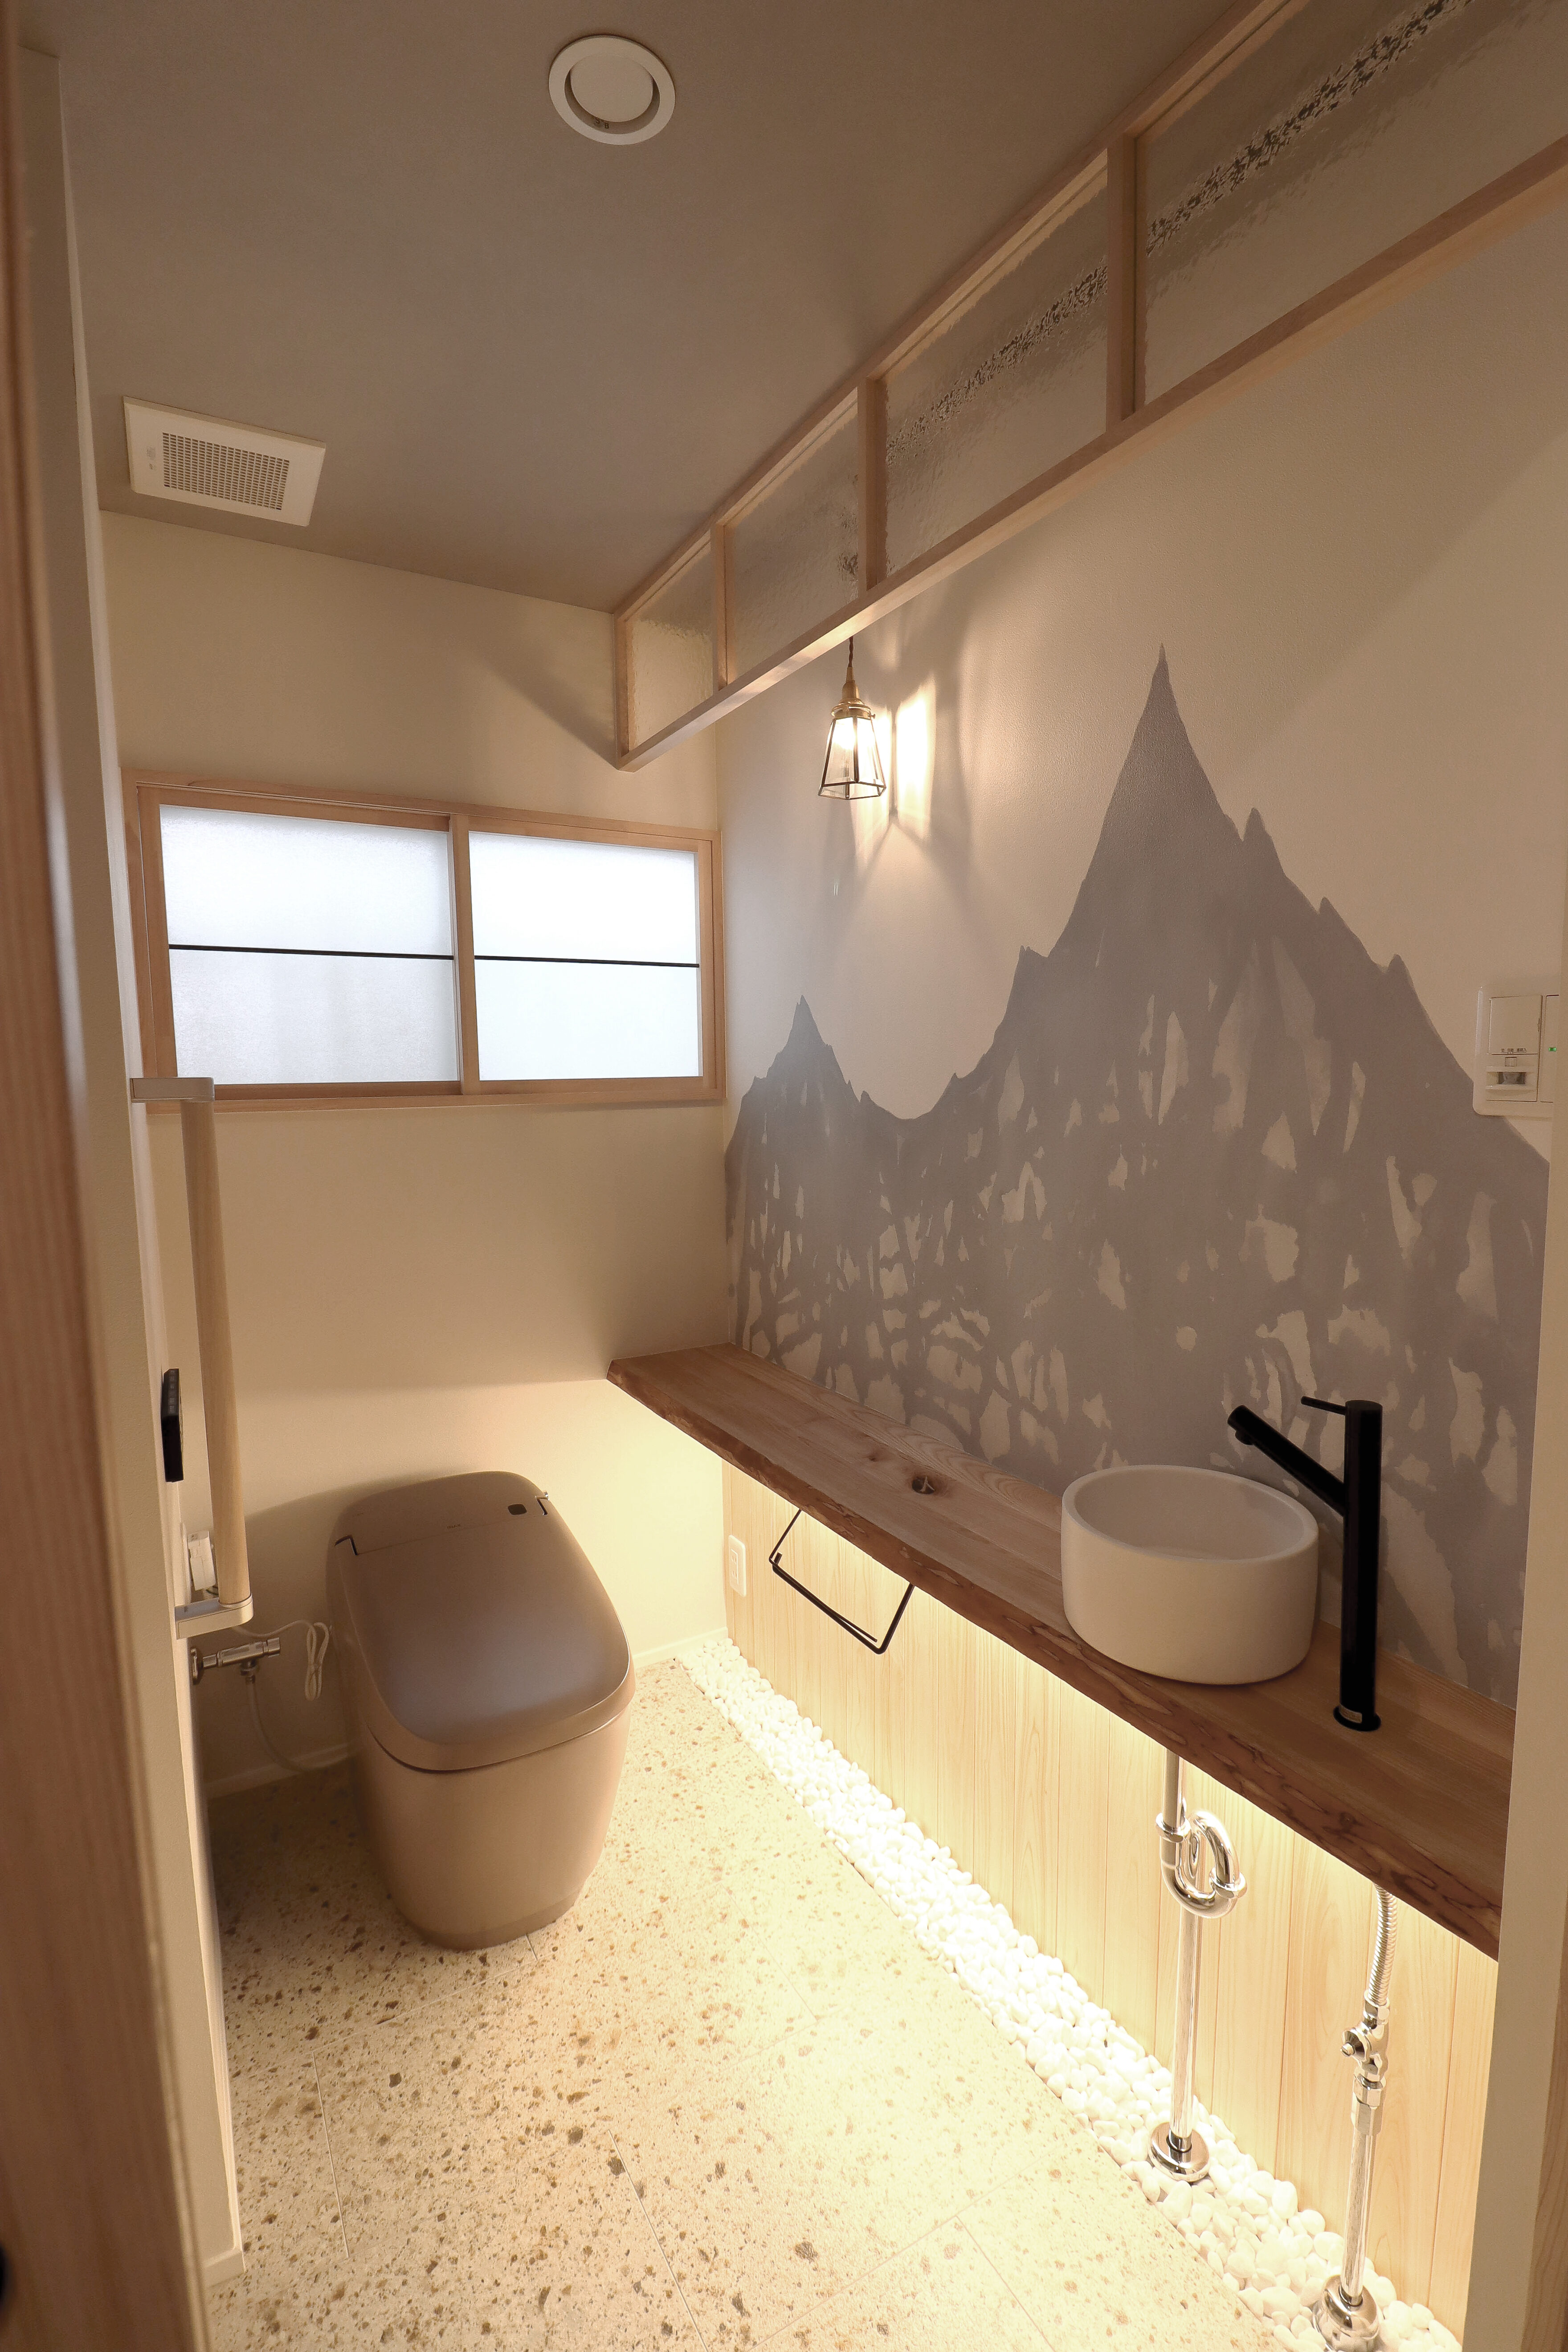 愛知県知立市の住宅、和モダンな装いのトイレの壁面に採用された美術作家 佐々木愛の「山 / LKAS002」。